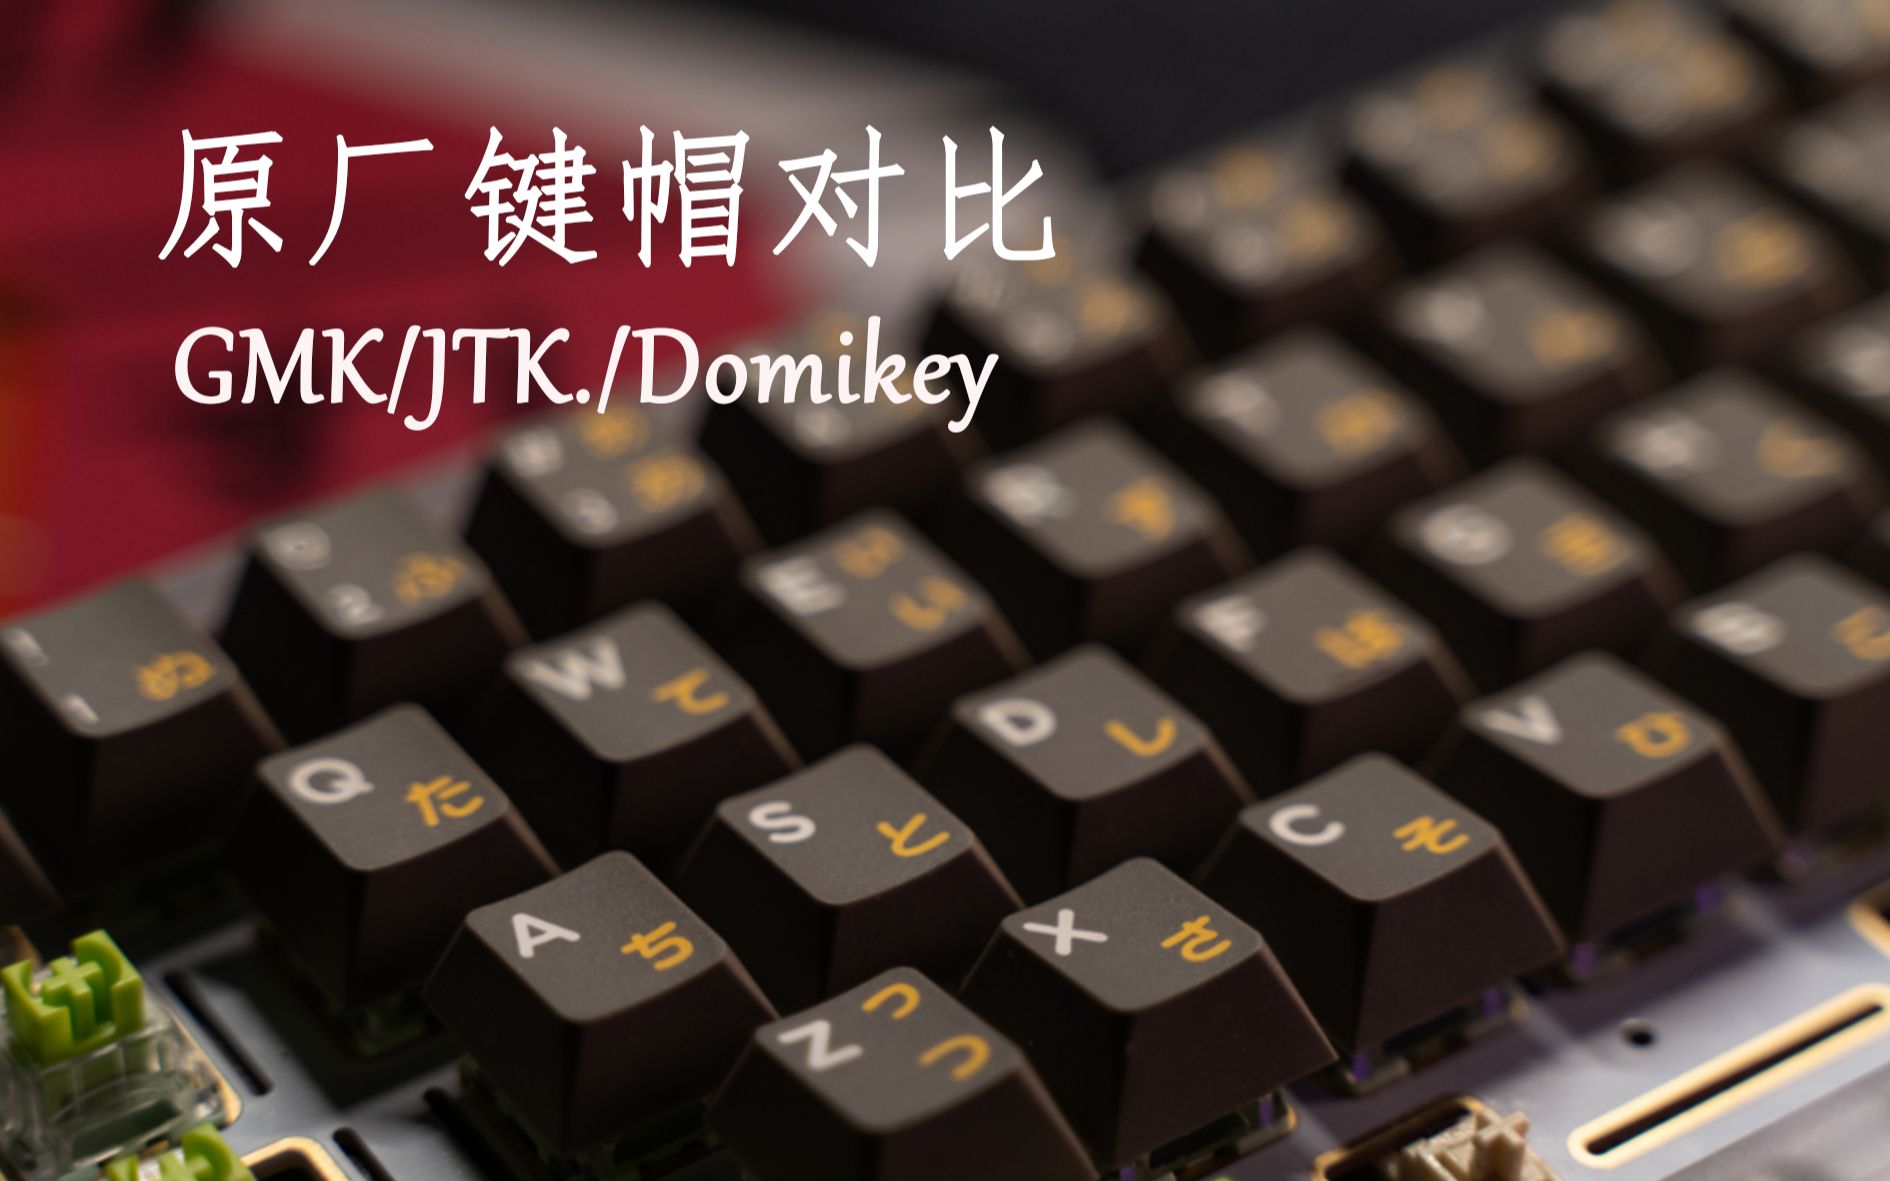 Domikey三色原厂键帽首发-ABS原厂键帽哪家强?GMK/JTK/Domikey原厂键帽对比-客制化键盘配件篇